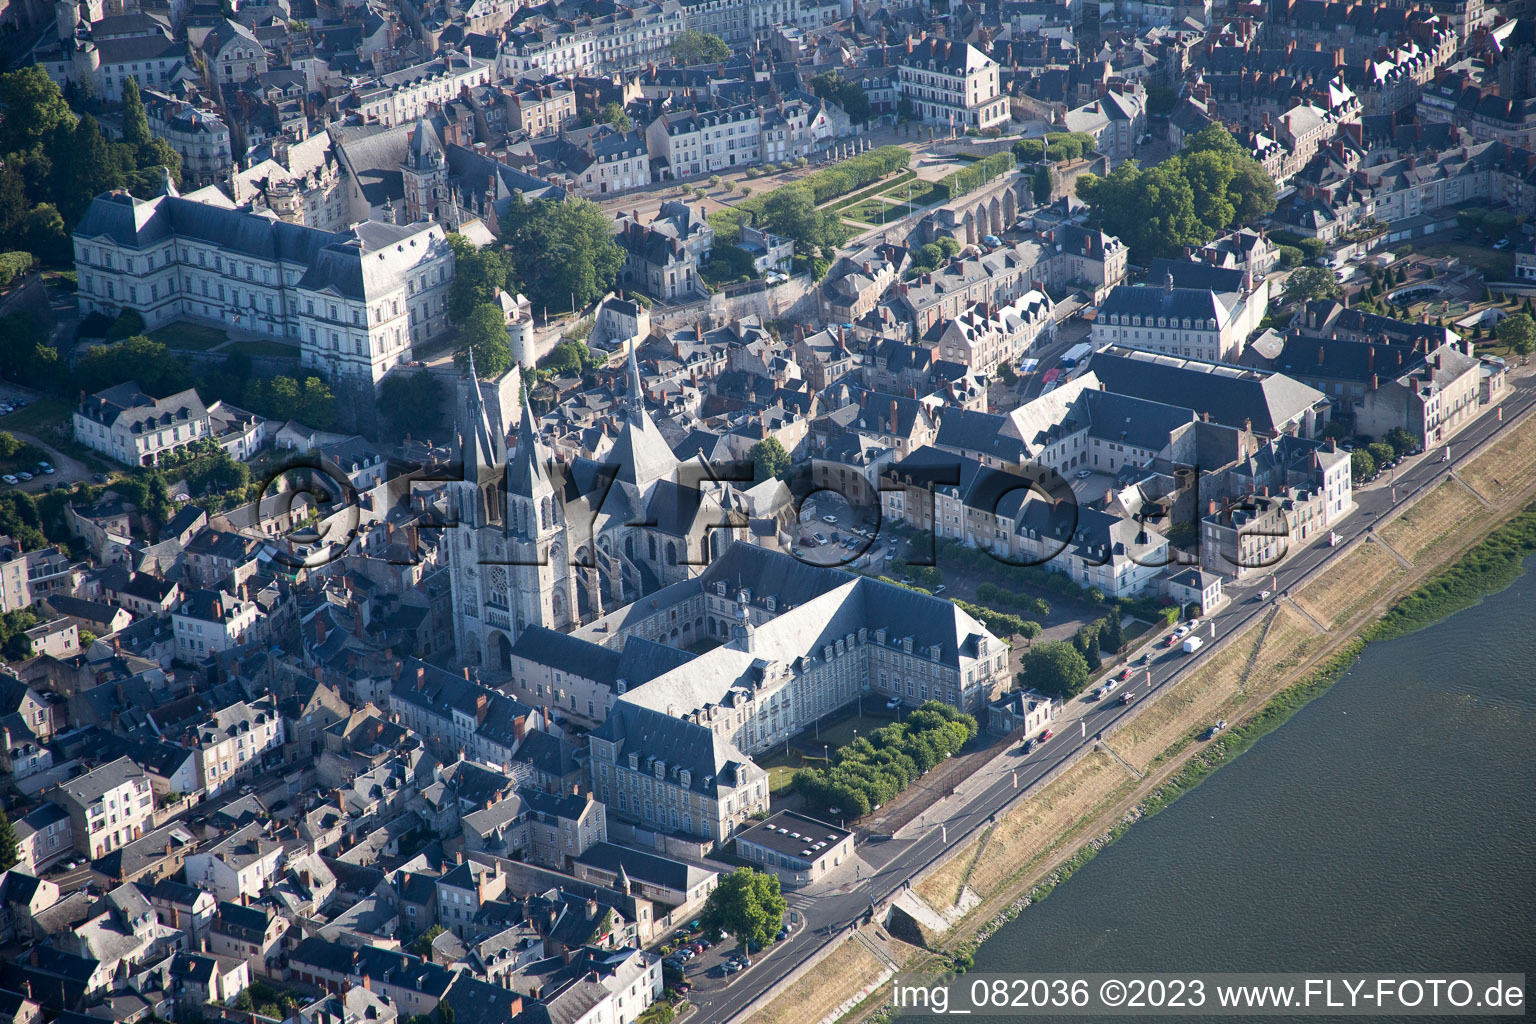 Blois dans le département Loir et Cher, France d'en haut